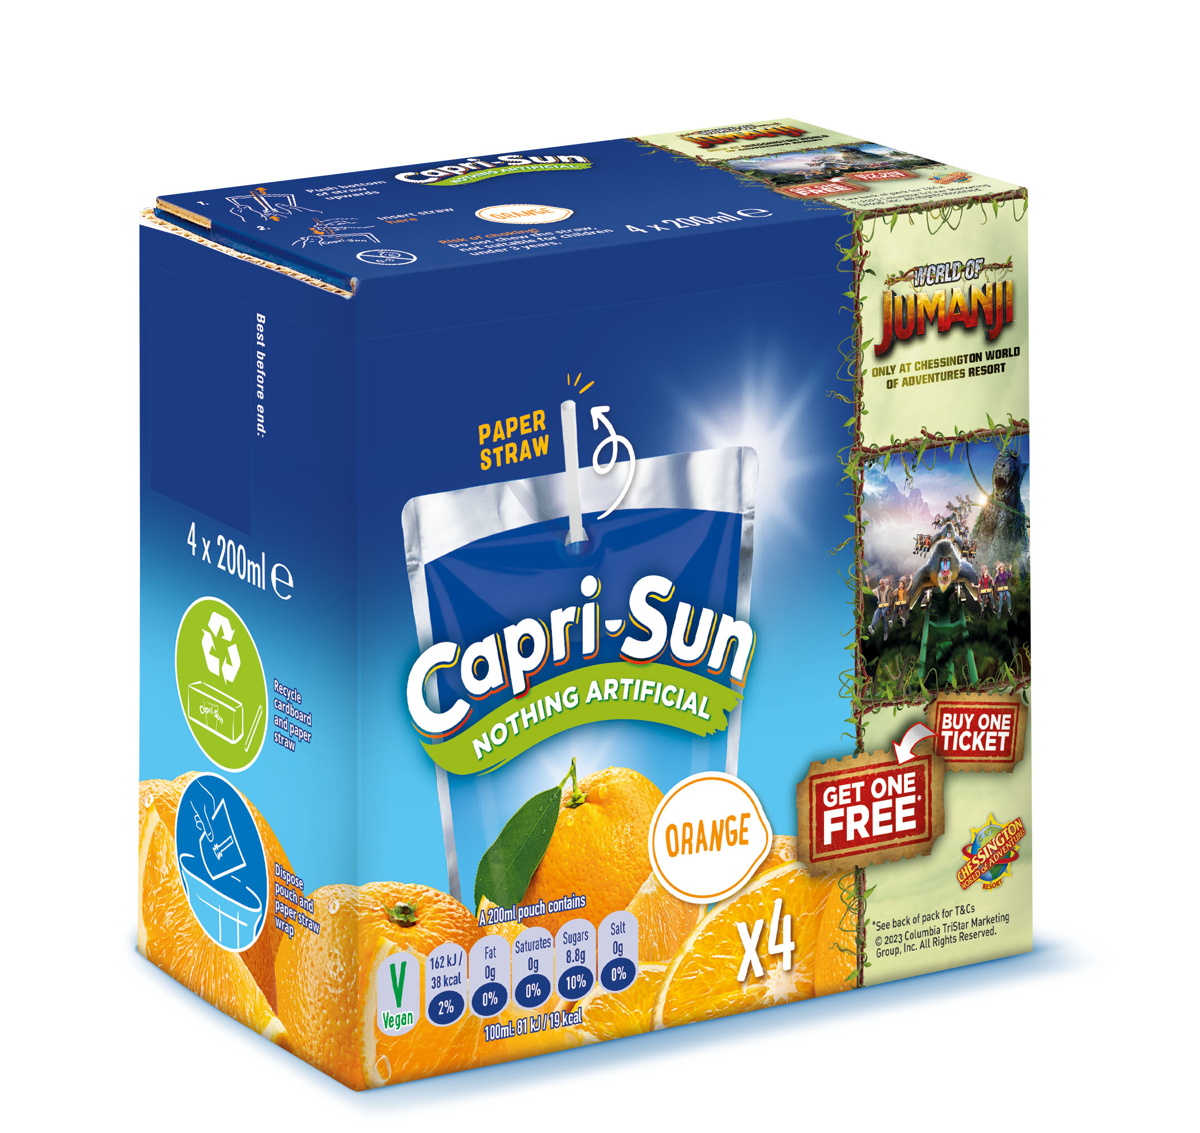 Capri-Sun announces Merlin on-pack promotion for World of Jumanji